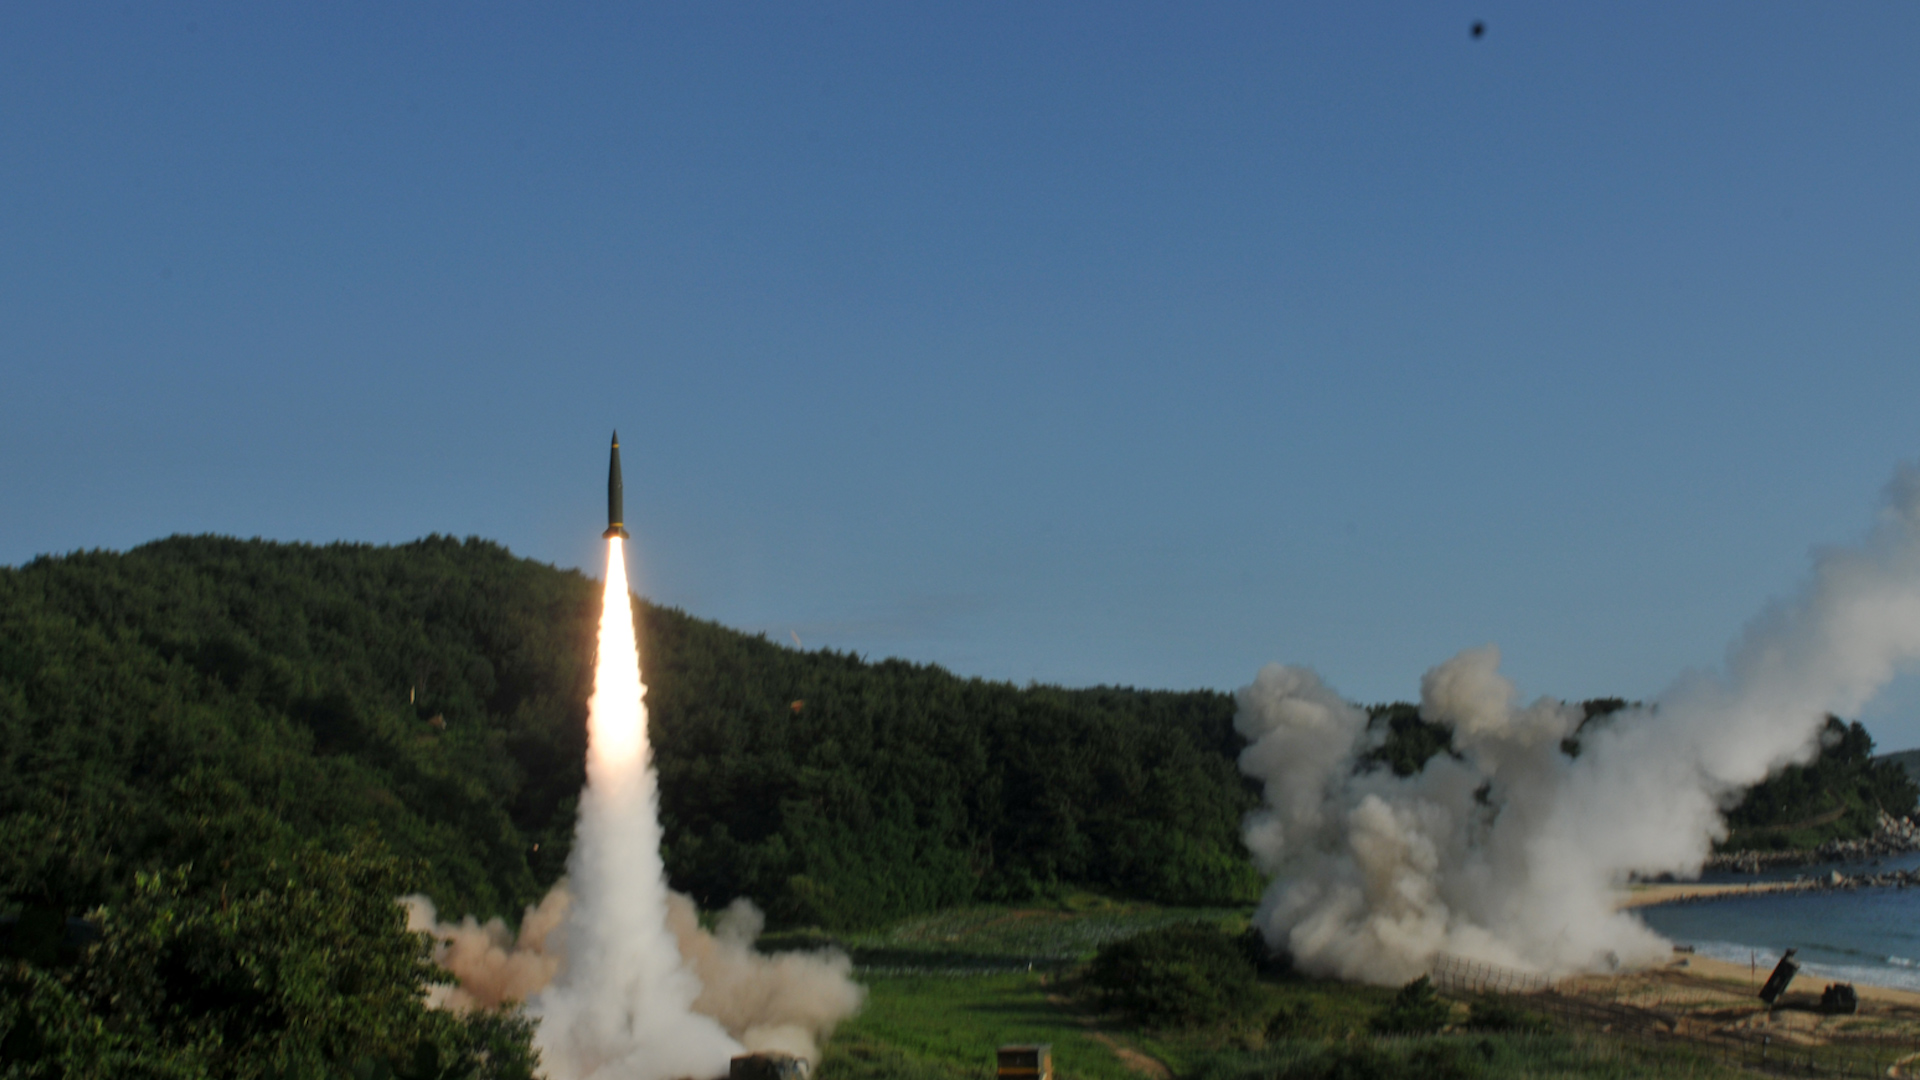 Tên lửa tầm xa ATACMS có khả năng tấn công các mục tiêu cách xa 300km đã đến Ukraine trong tháng 4.2024 theo chỉ đạo của tổng thống Mỹ